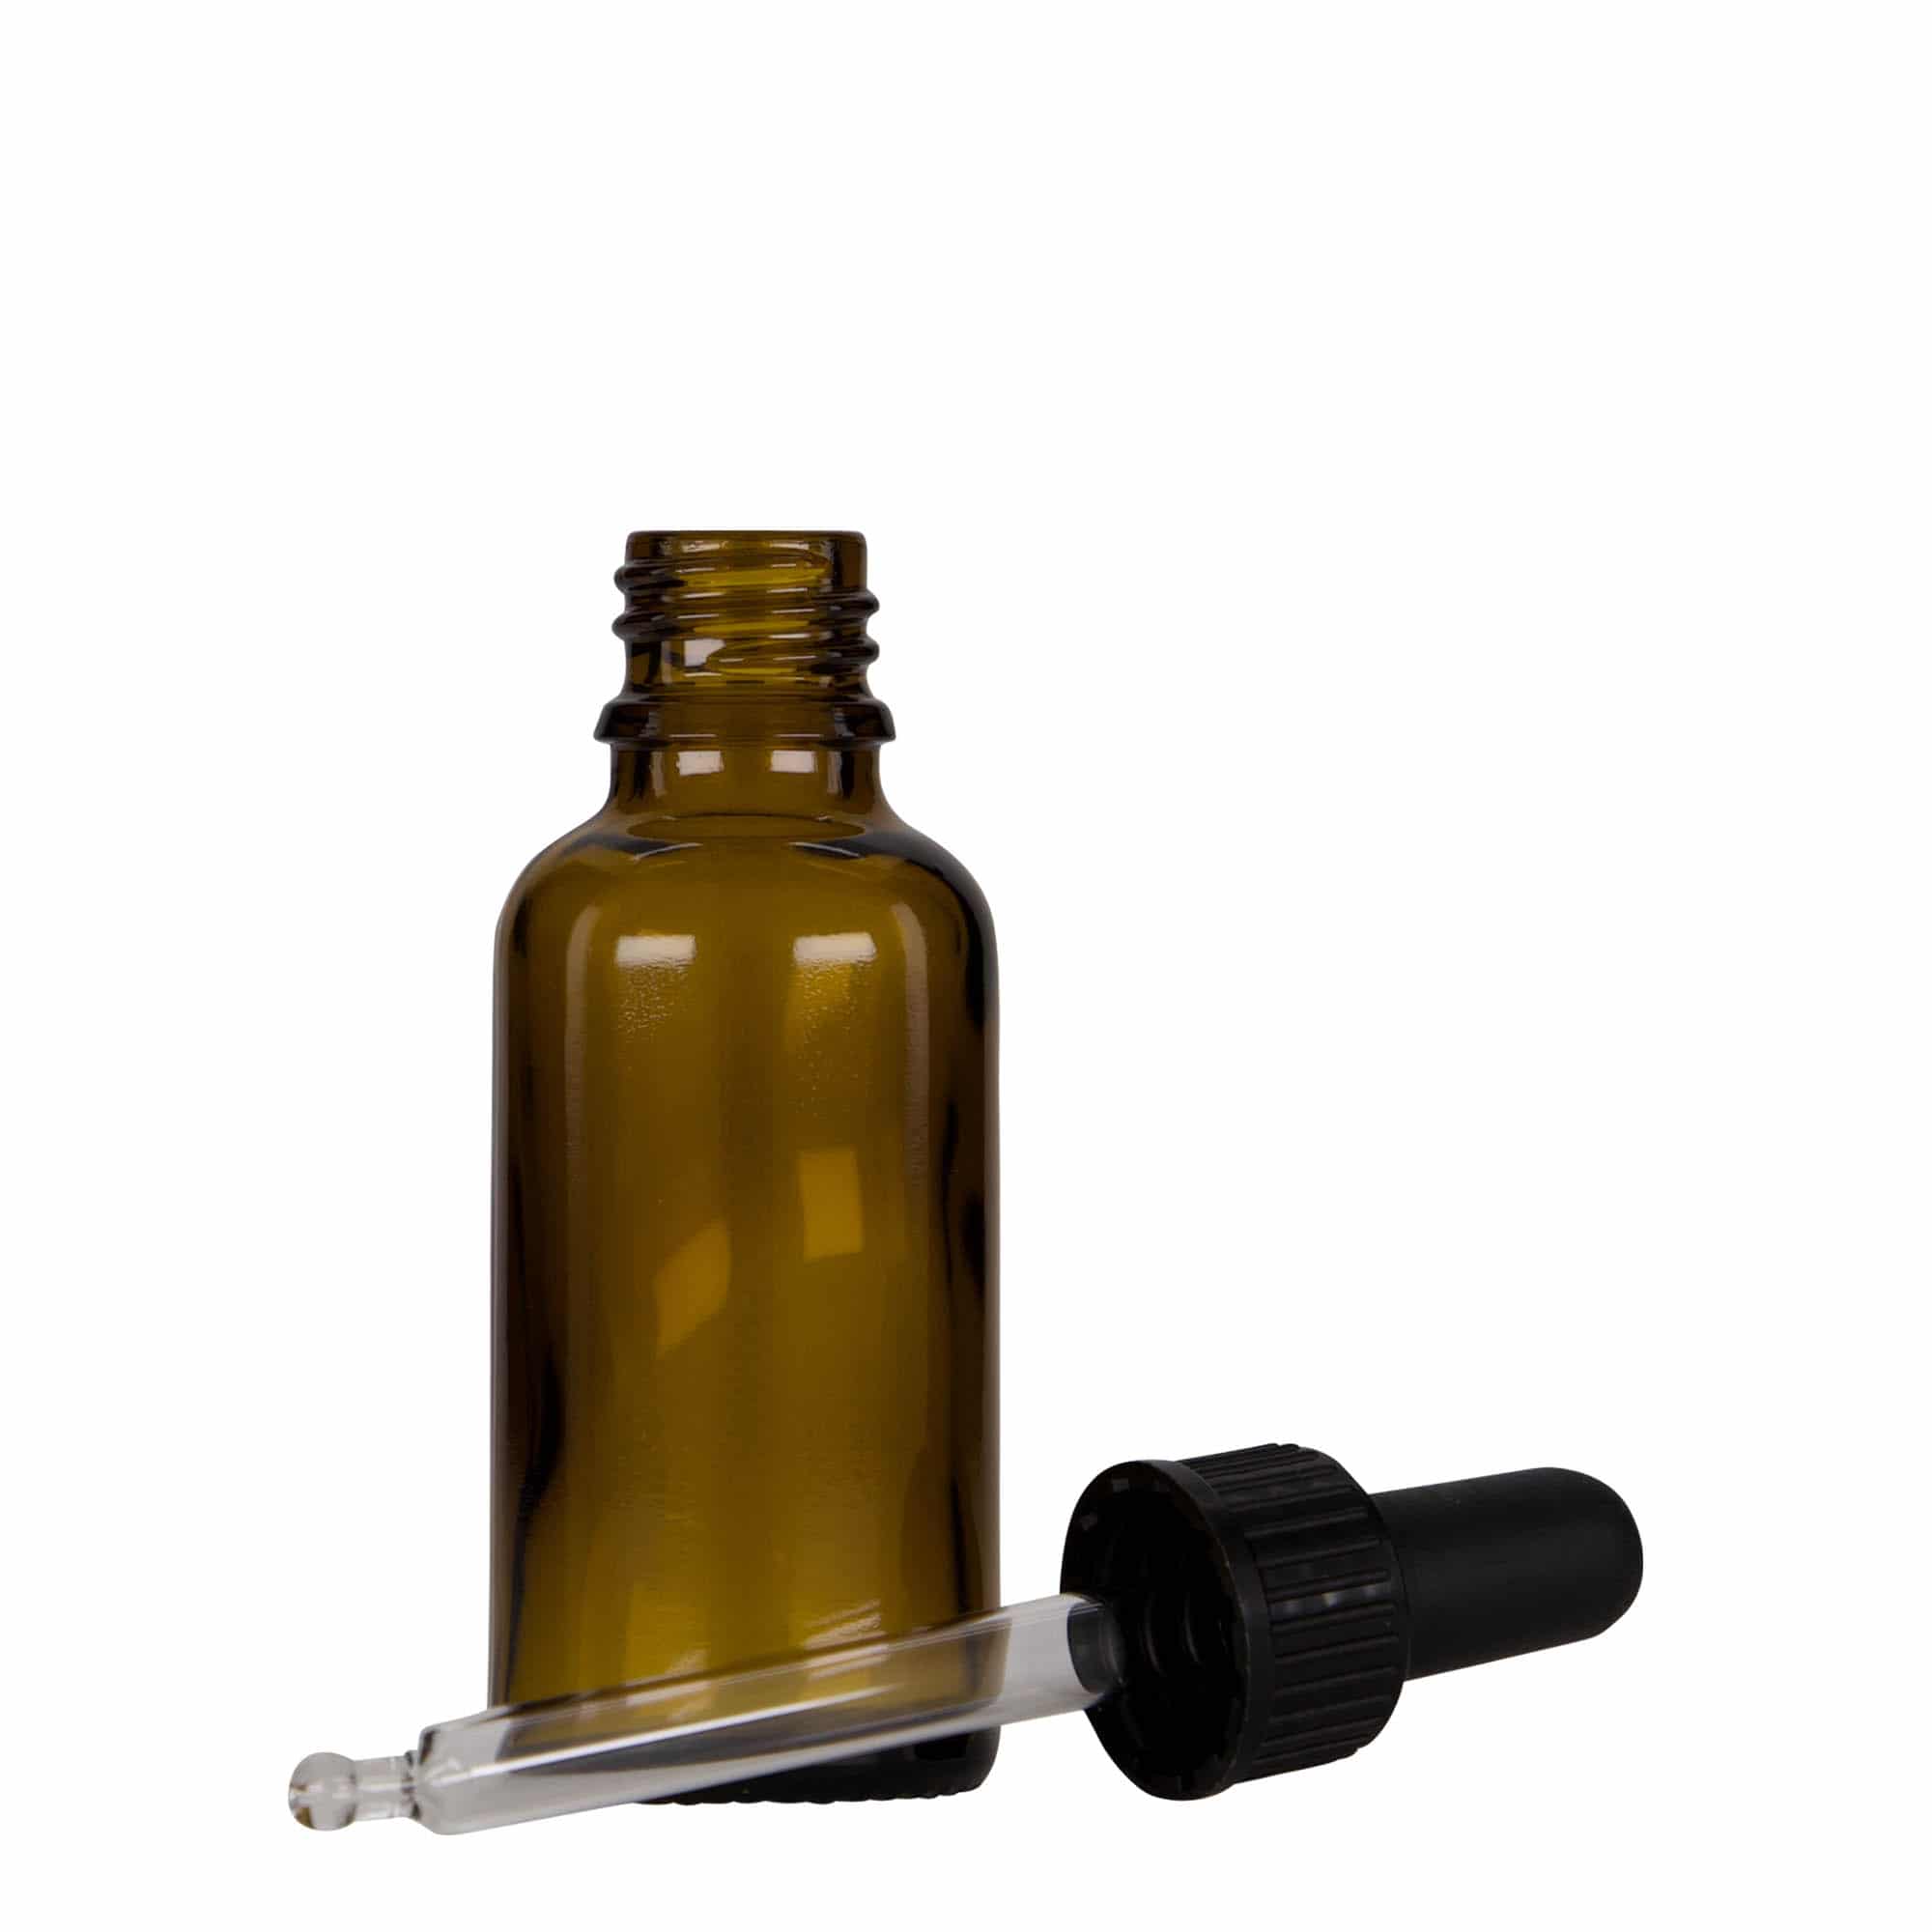 30 ml butelka farmaceutyczna z pipetą, szkło, kolor brązowo-czarny, zamknięcie: DIN 18